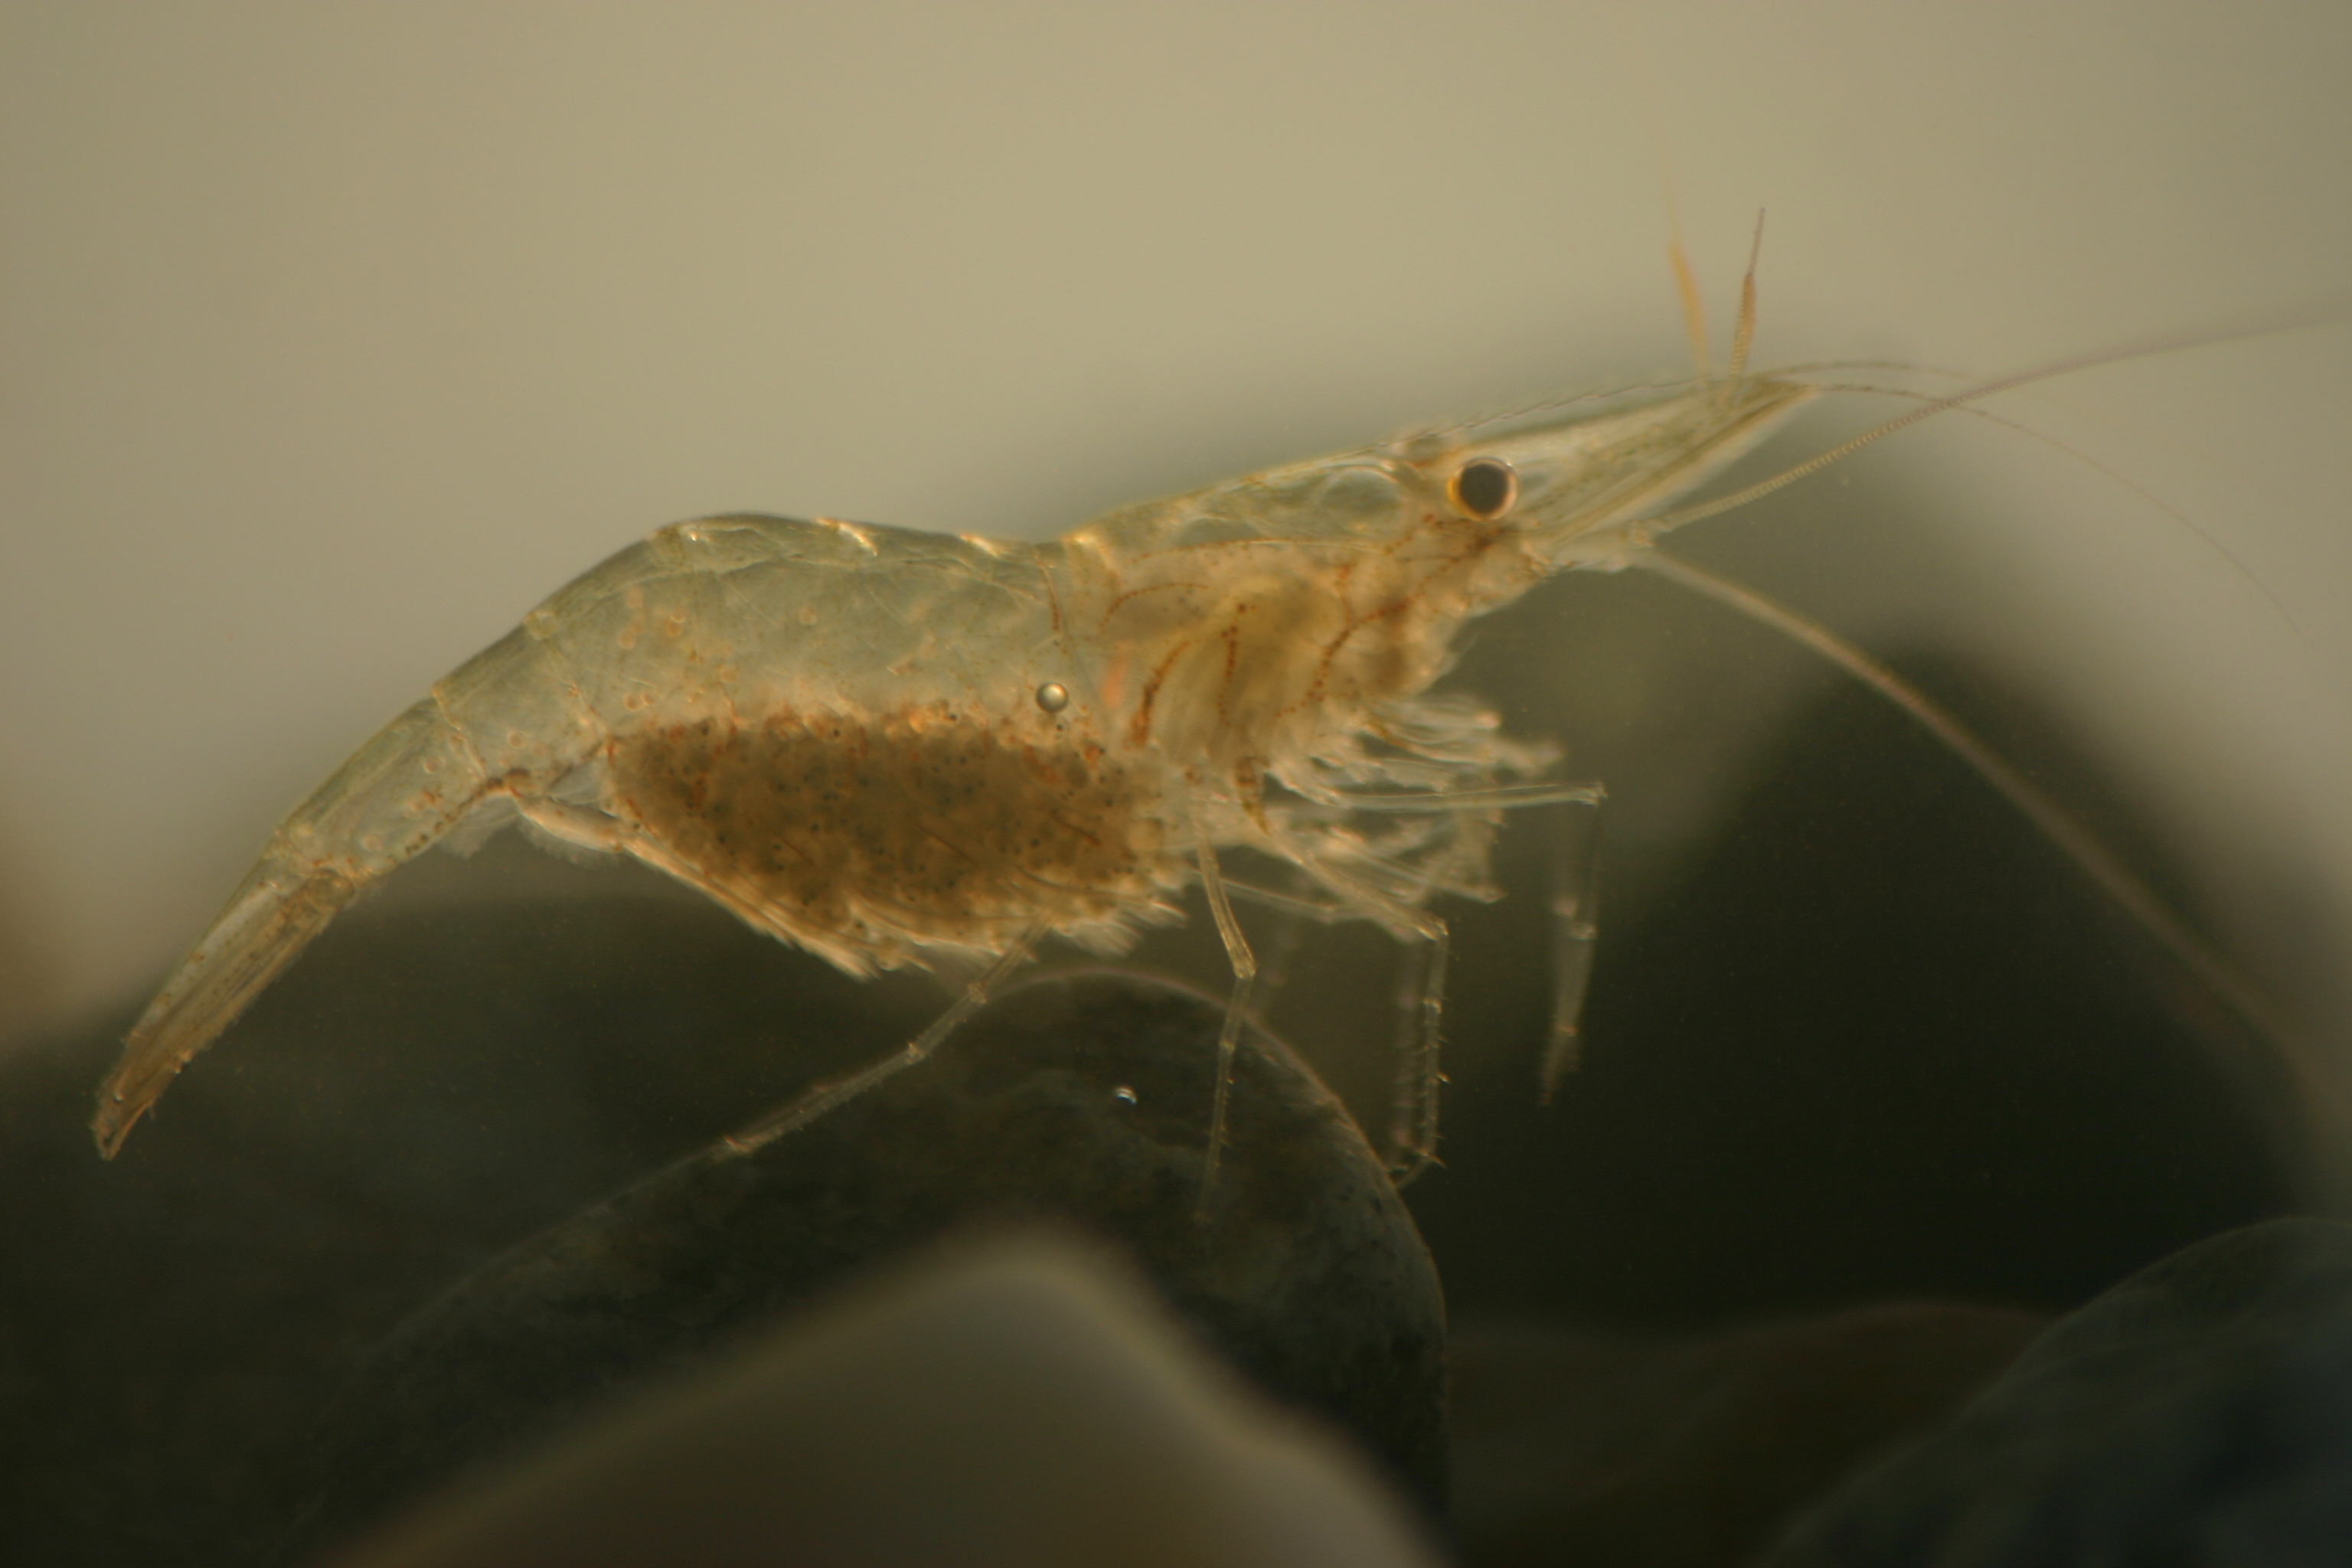 daggerblade grass shrimp - Encyclopedia of Life